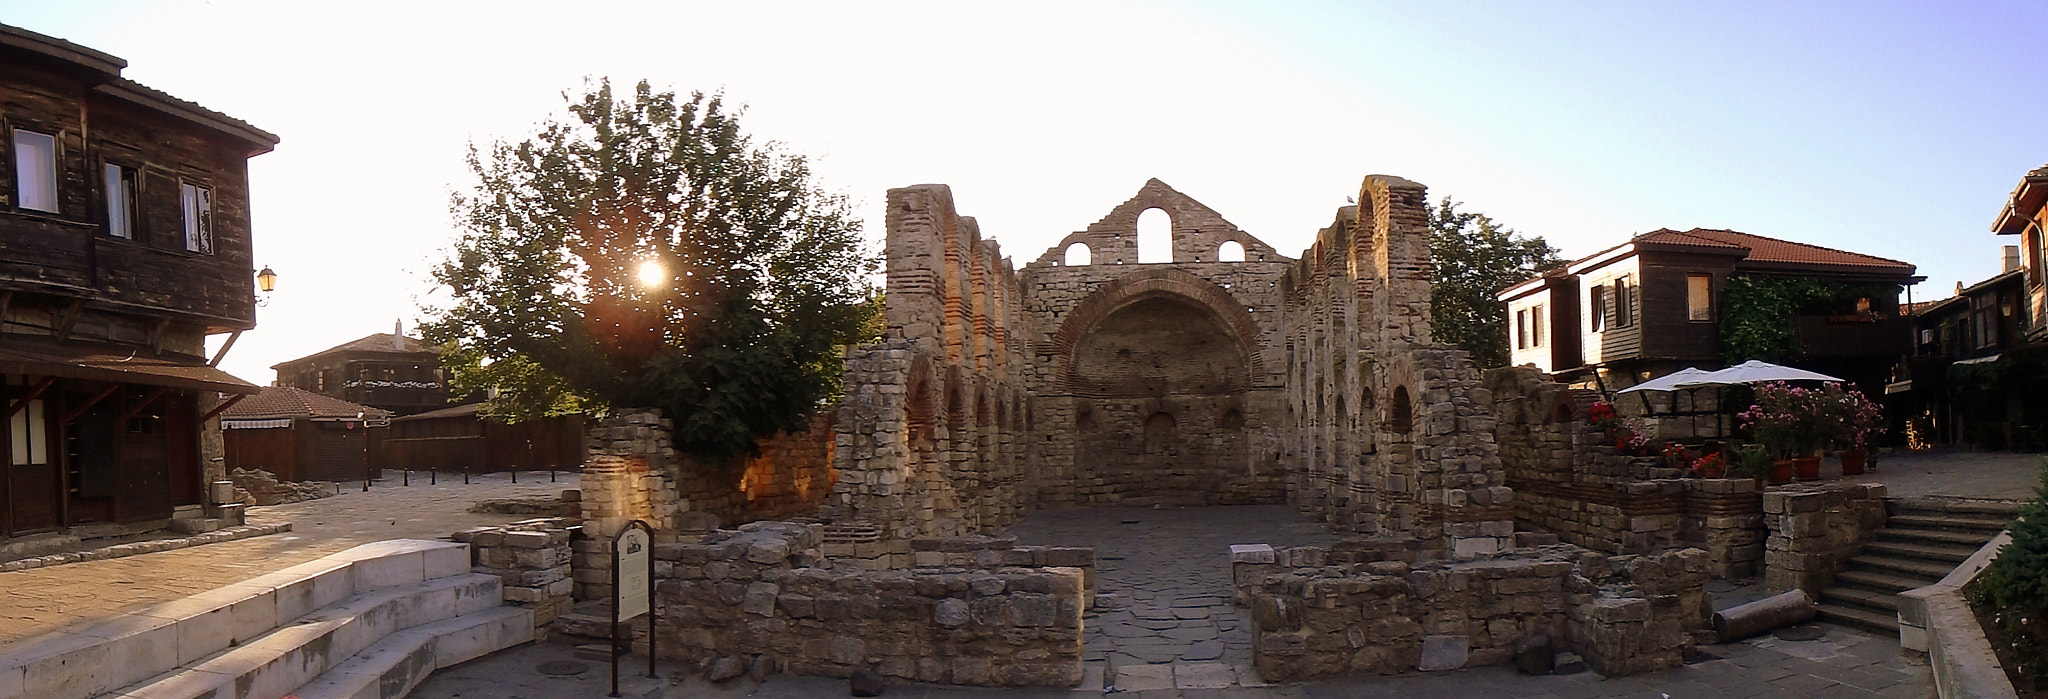 Olympus TG-860 sample photo. Церковь Святой Софии (Старый Несебр) Болгария photography